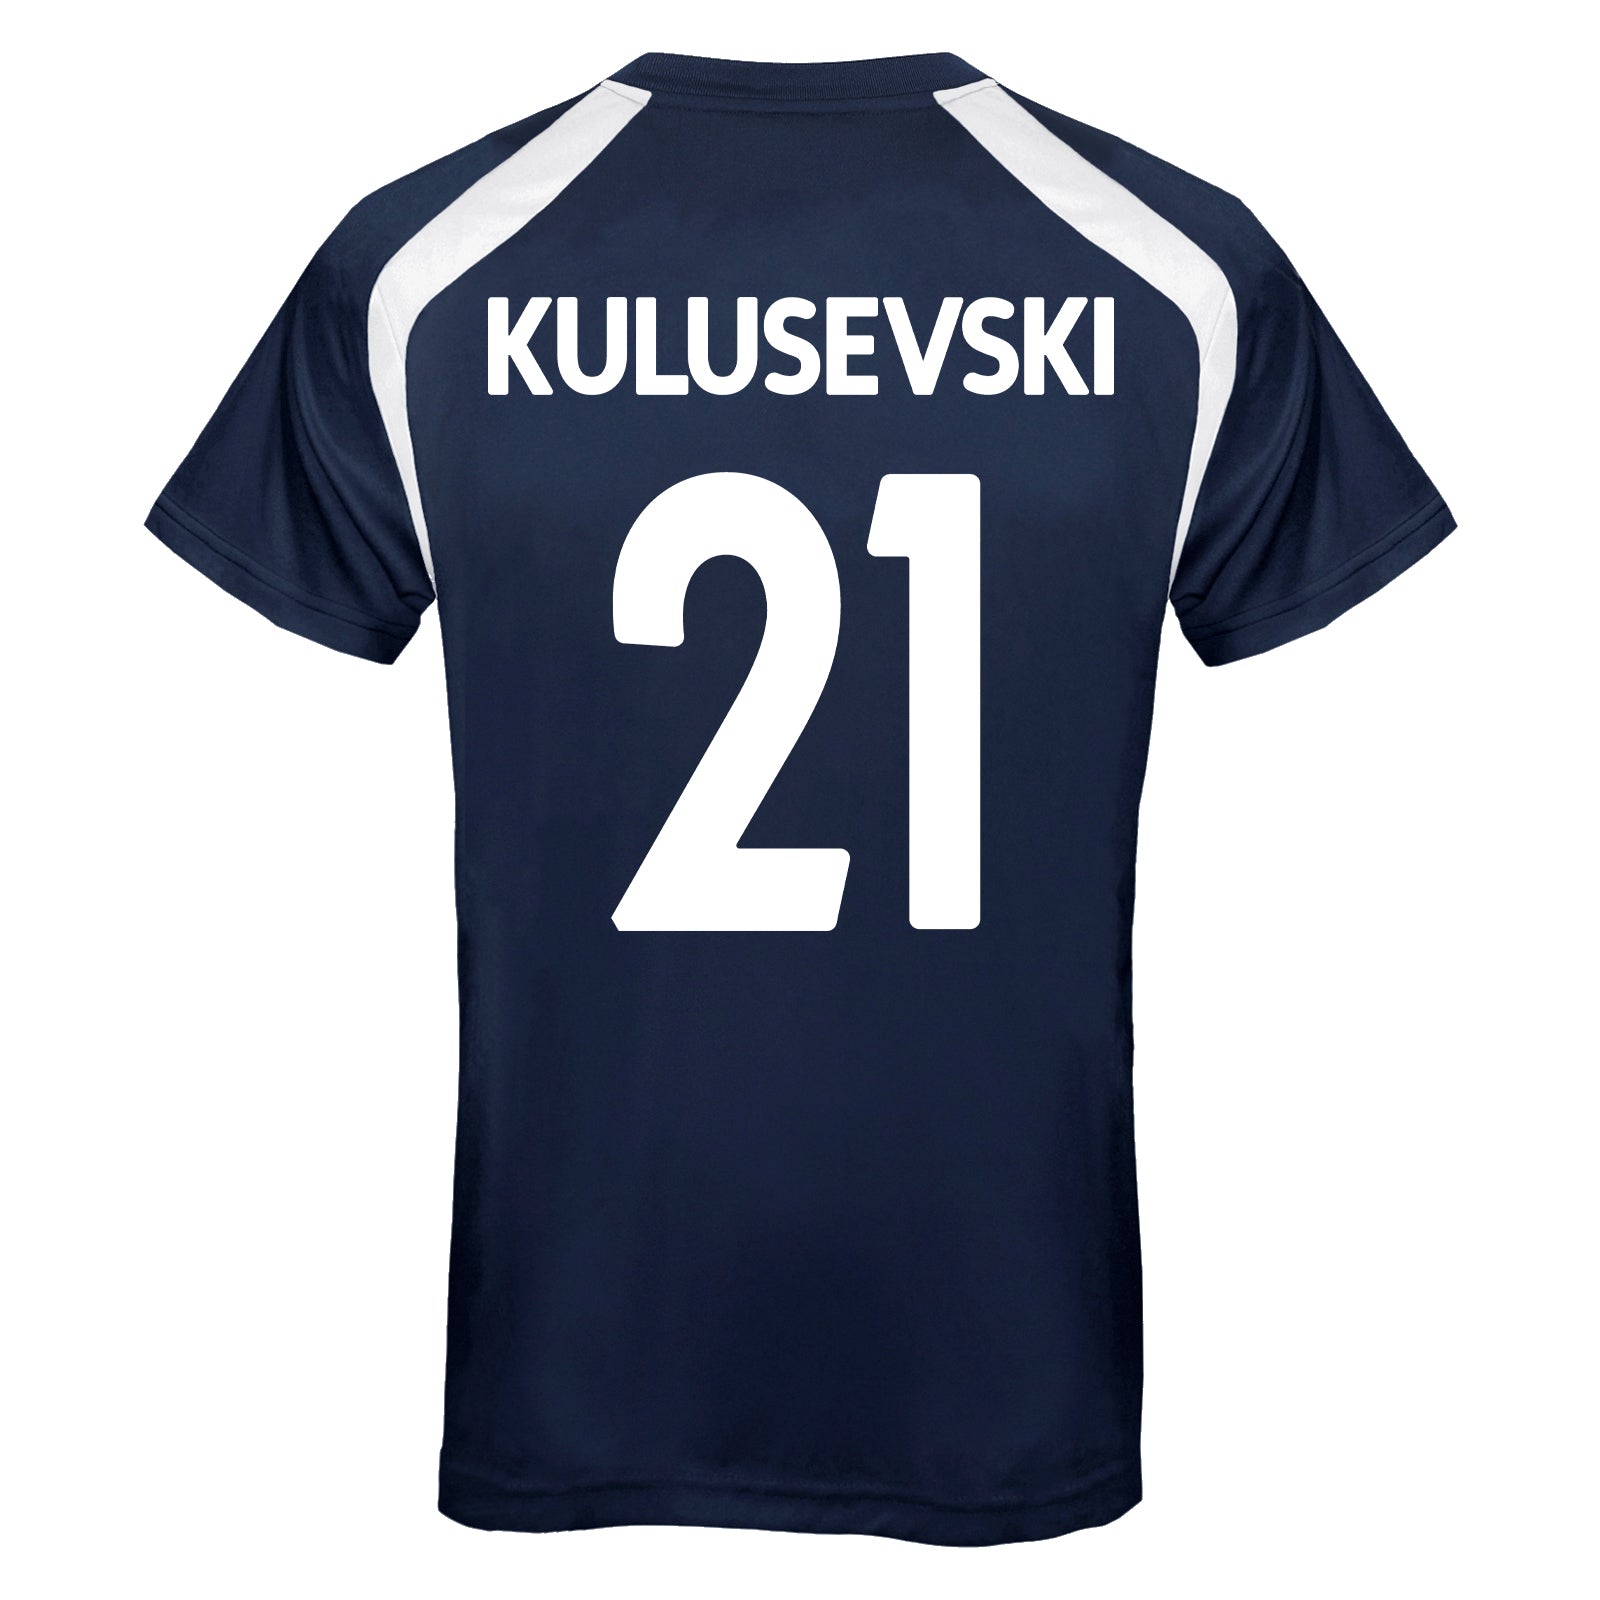 Navy Kulusevski